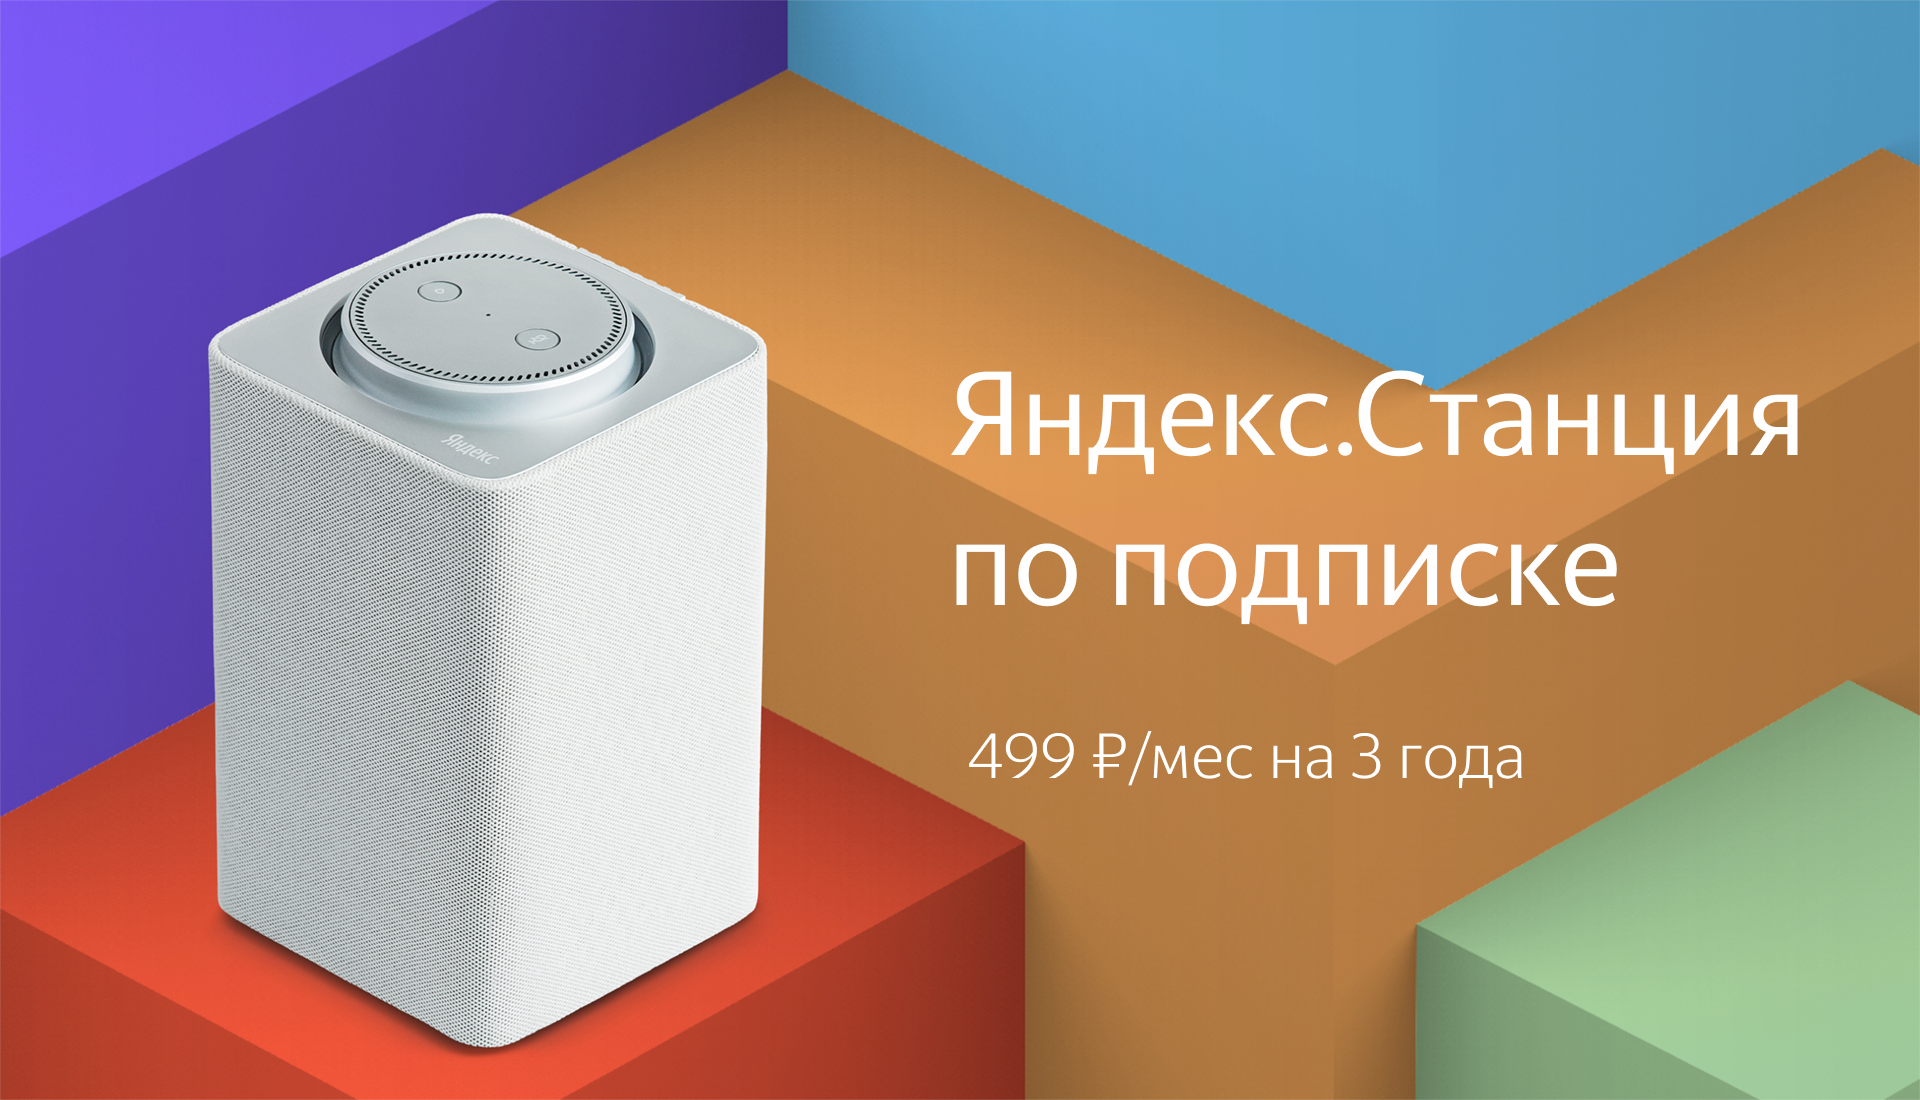 Яндекс подписка купить телеграмм фото 92